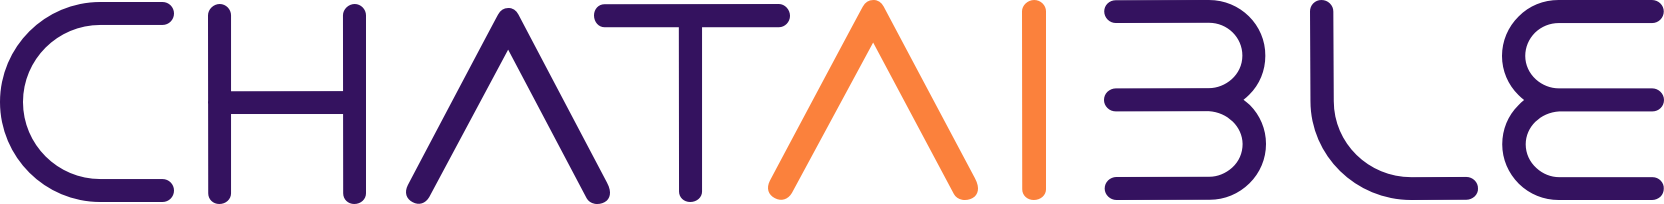 ChatAible Logo